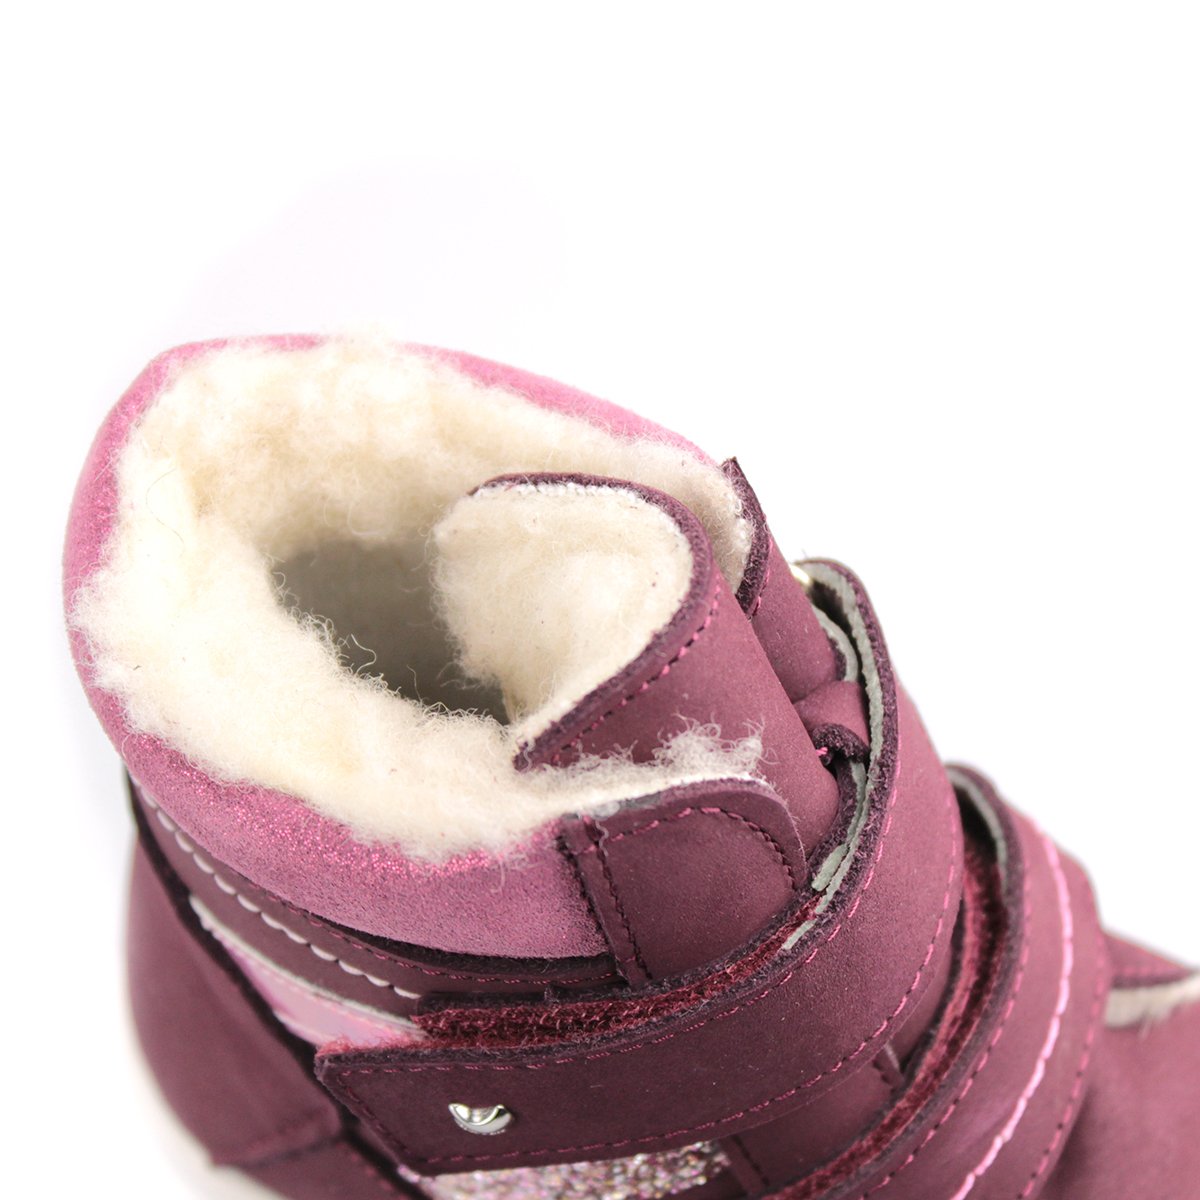 Каталог Ботинки девичьи Фабрика обуви